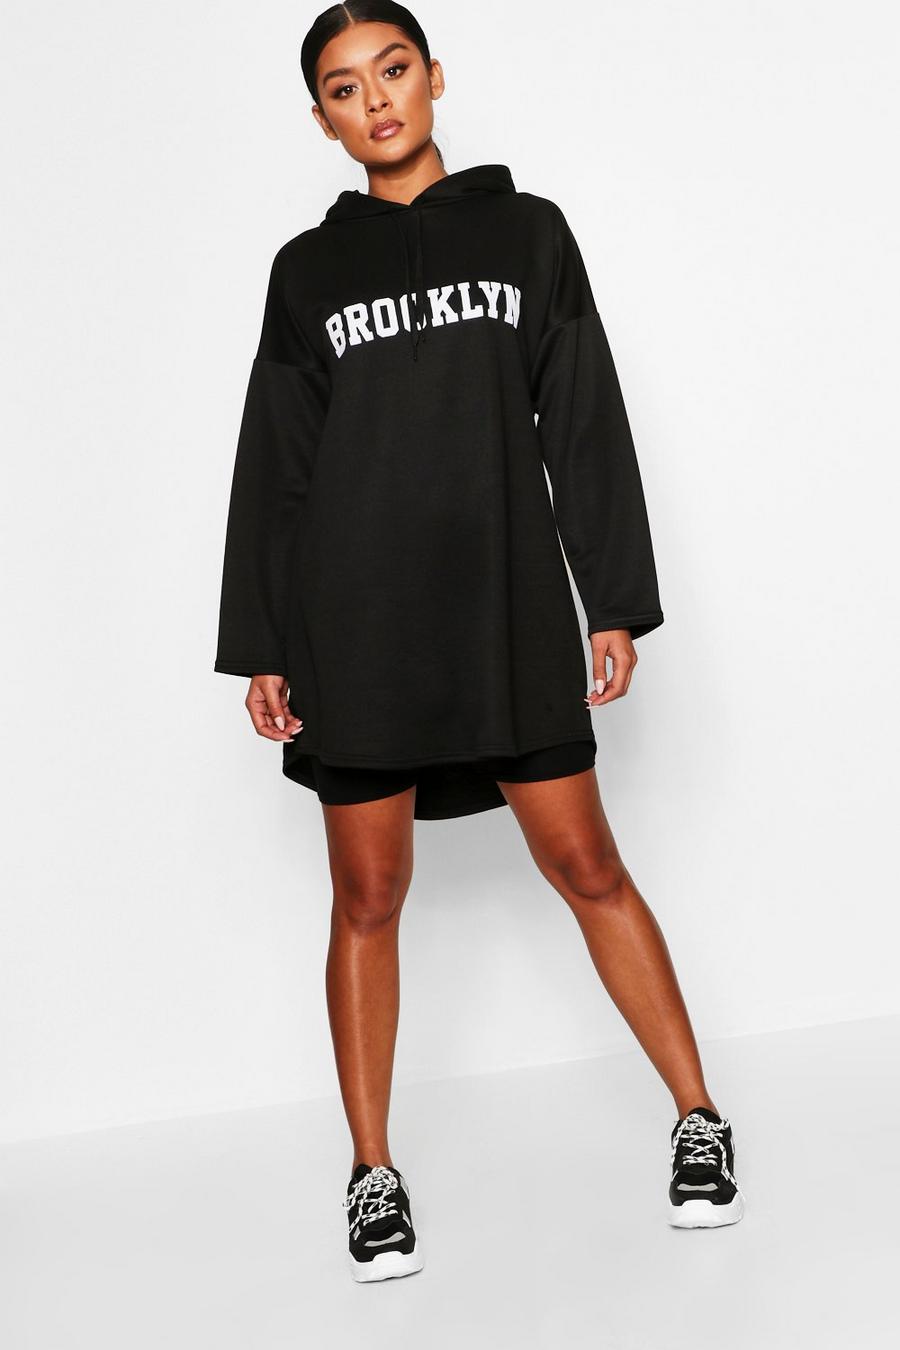 Brooklyn abito felpato scampanato con cappuccio image number 1